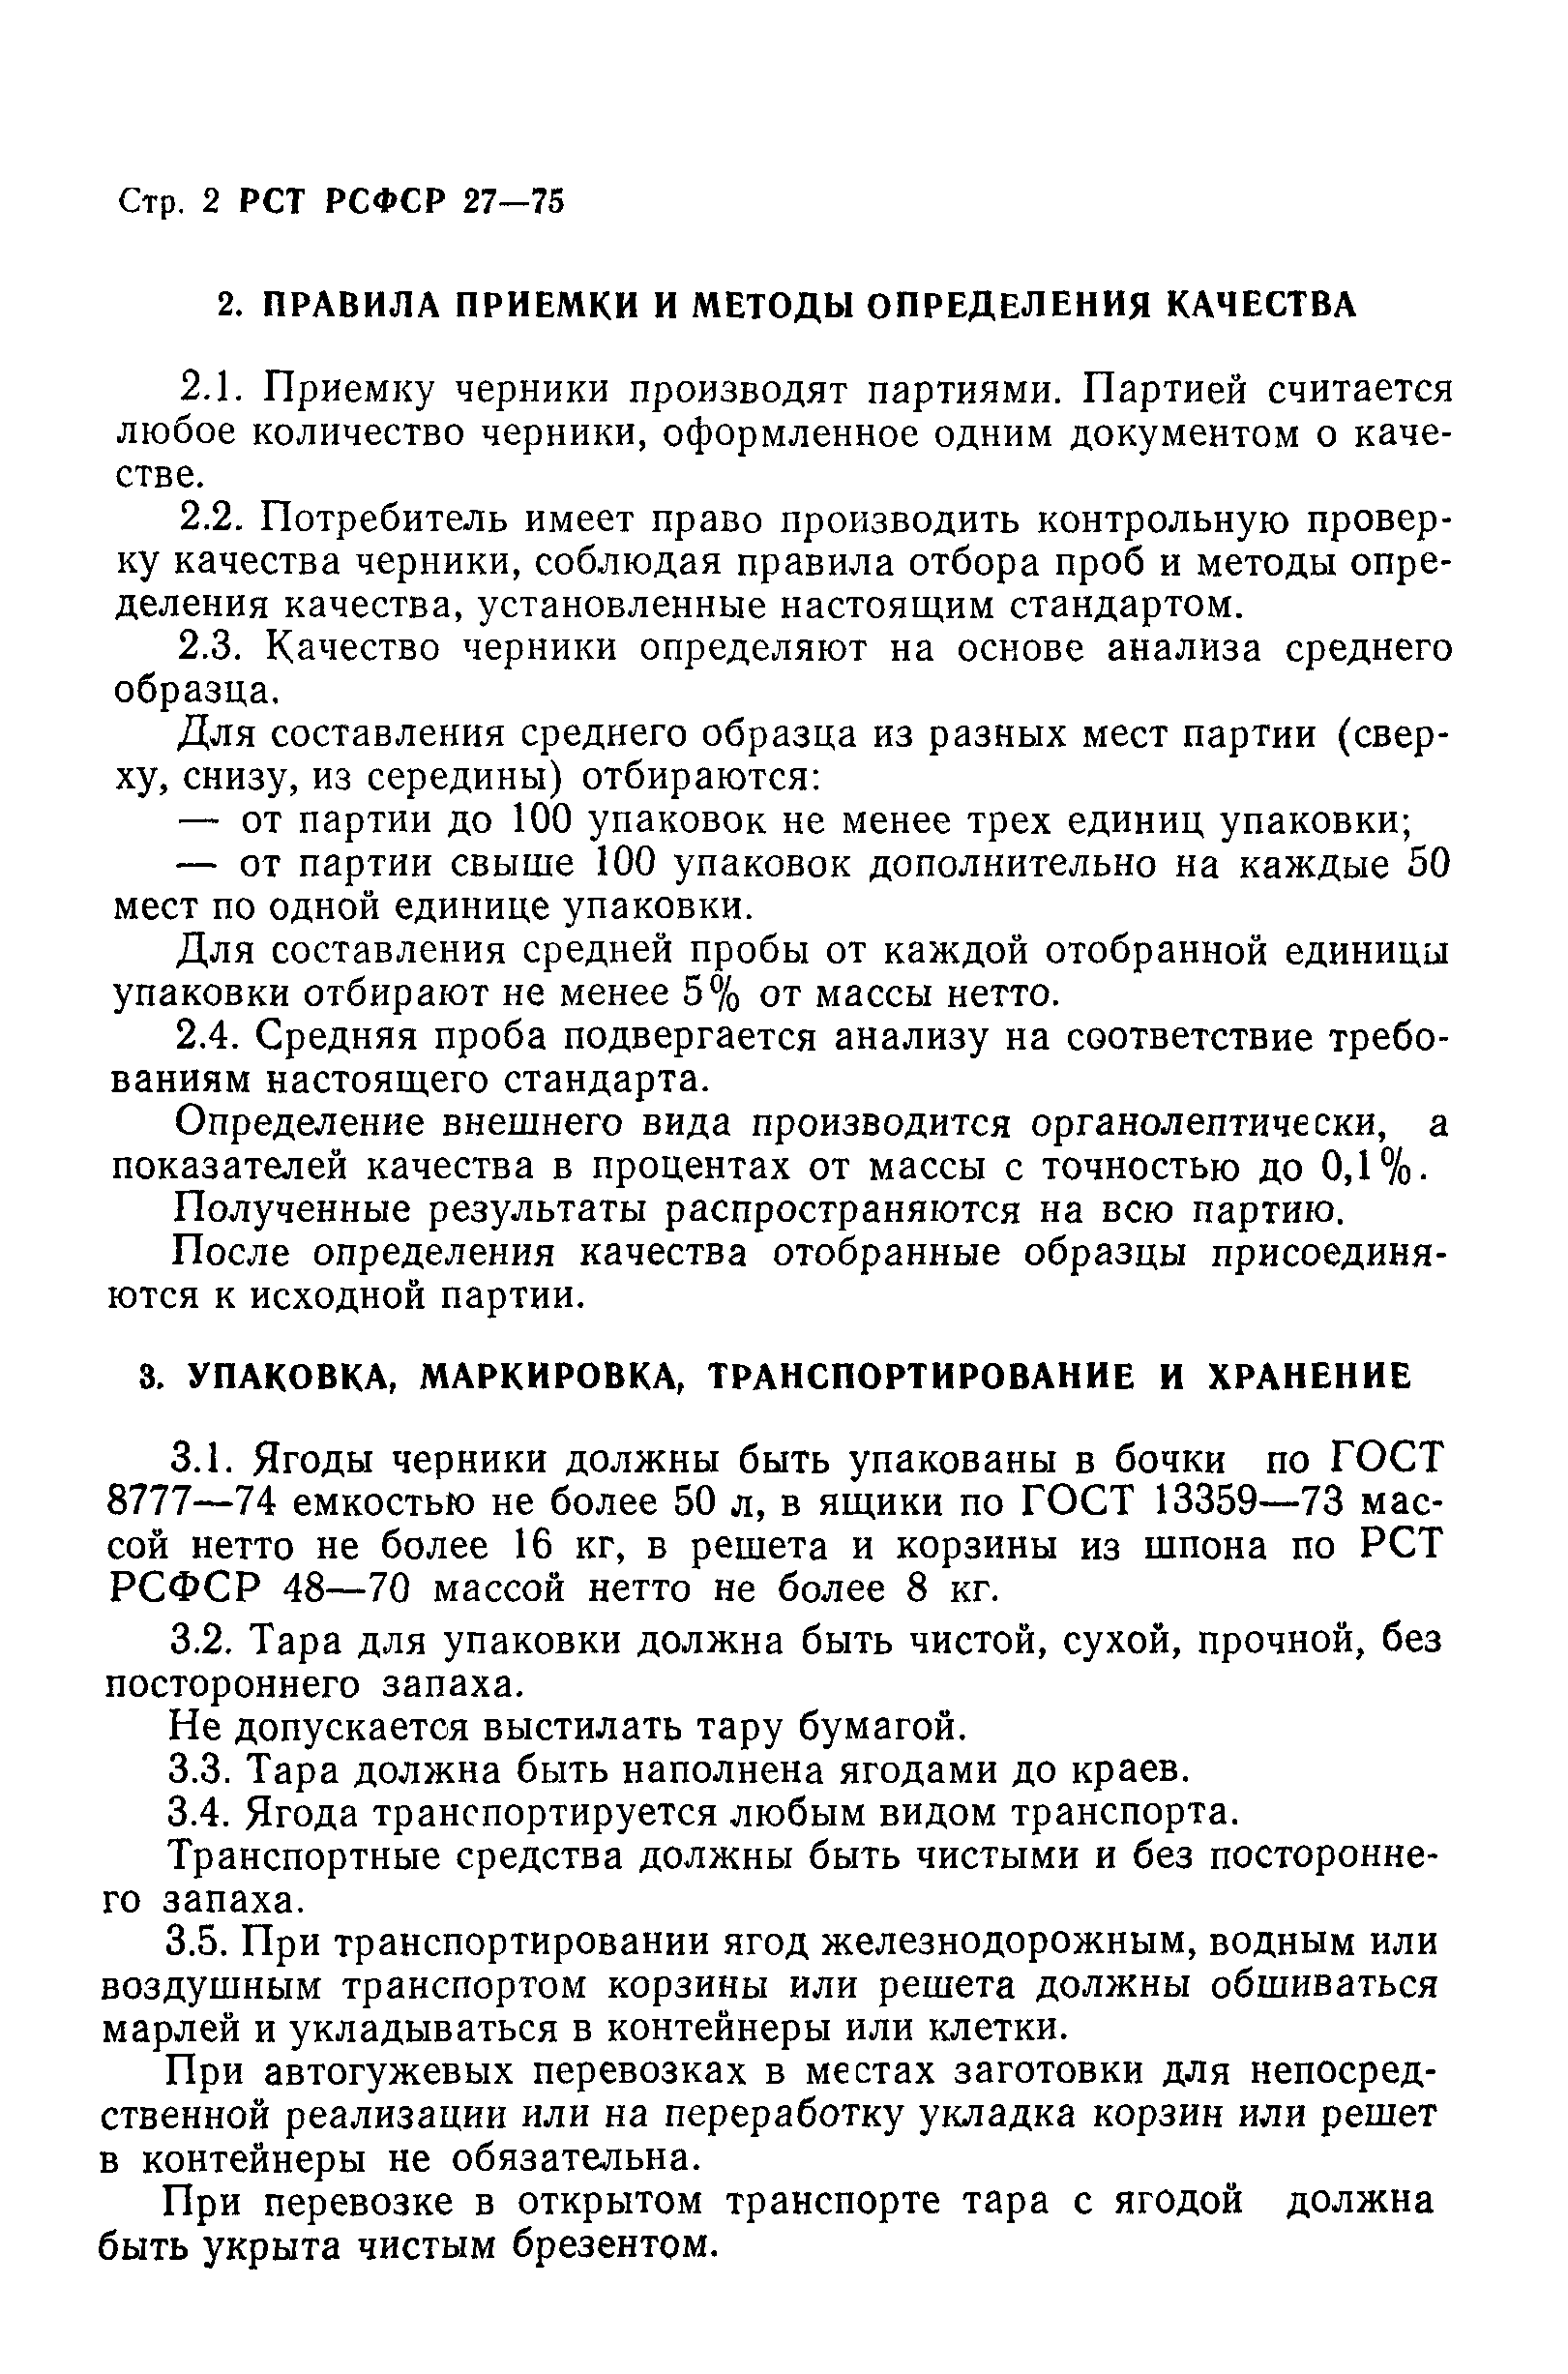 РСТ РСФСР 27-75